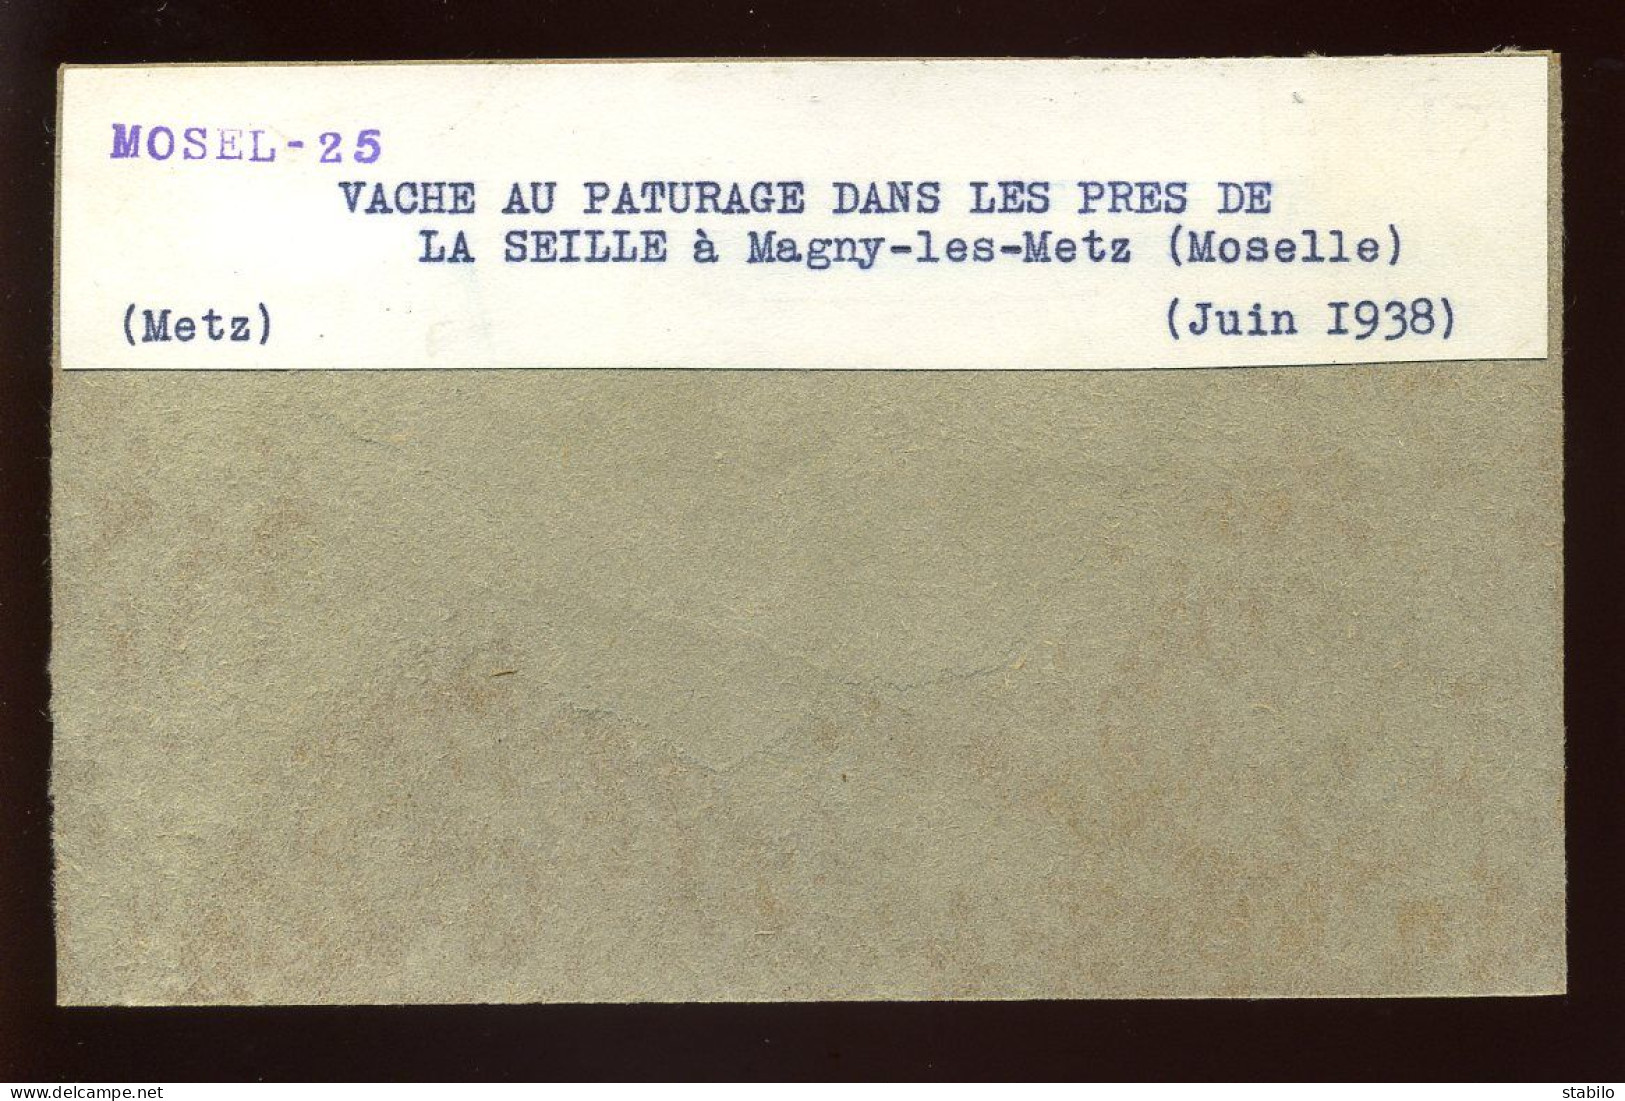 MAGNY-LES-METZ (MOSELLE) - VACHE AU PATURAGE DANS LES PRES DE LA SEILLE - JUIN 1938 - FORMAT :13 X 8.5 CM - Lieux